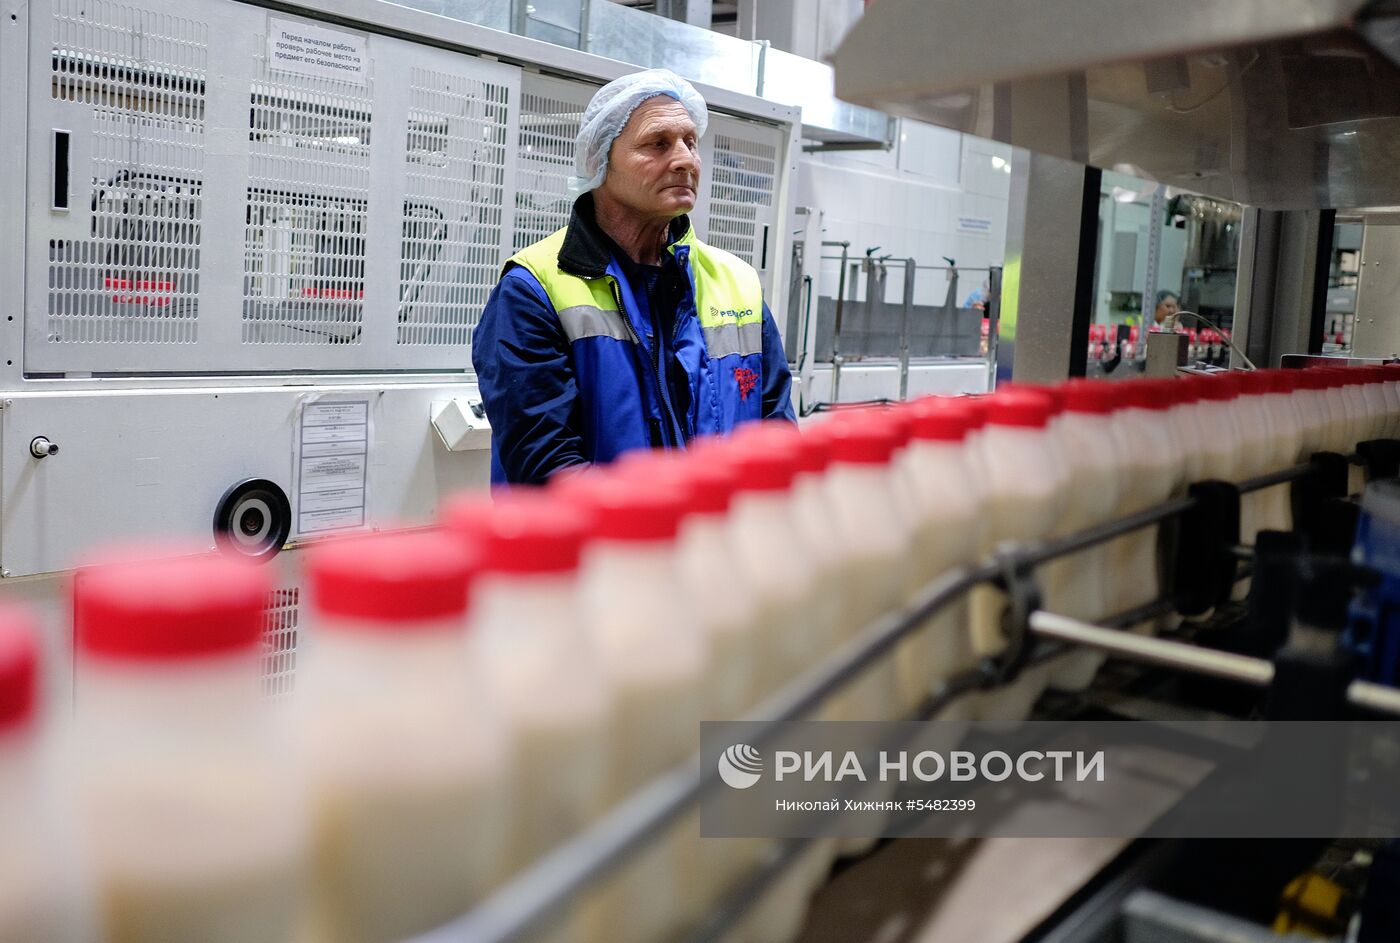 Открытие линии детского питания на заводе PepsiCo в Краснодарском крае 